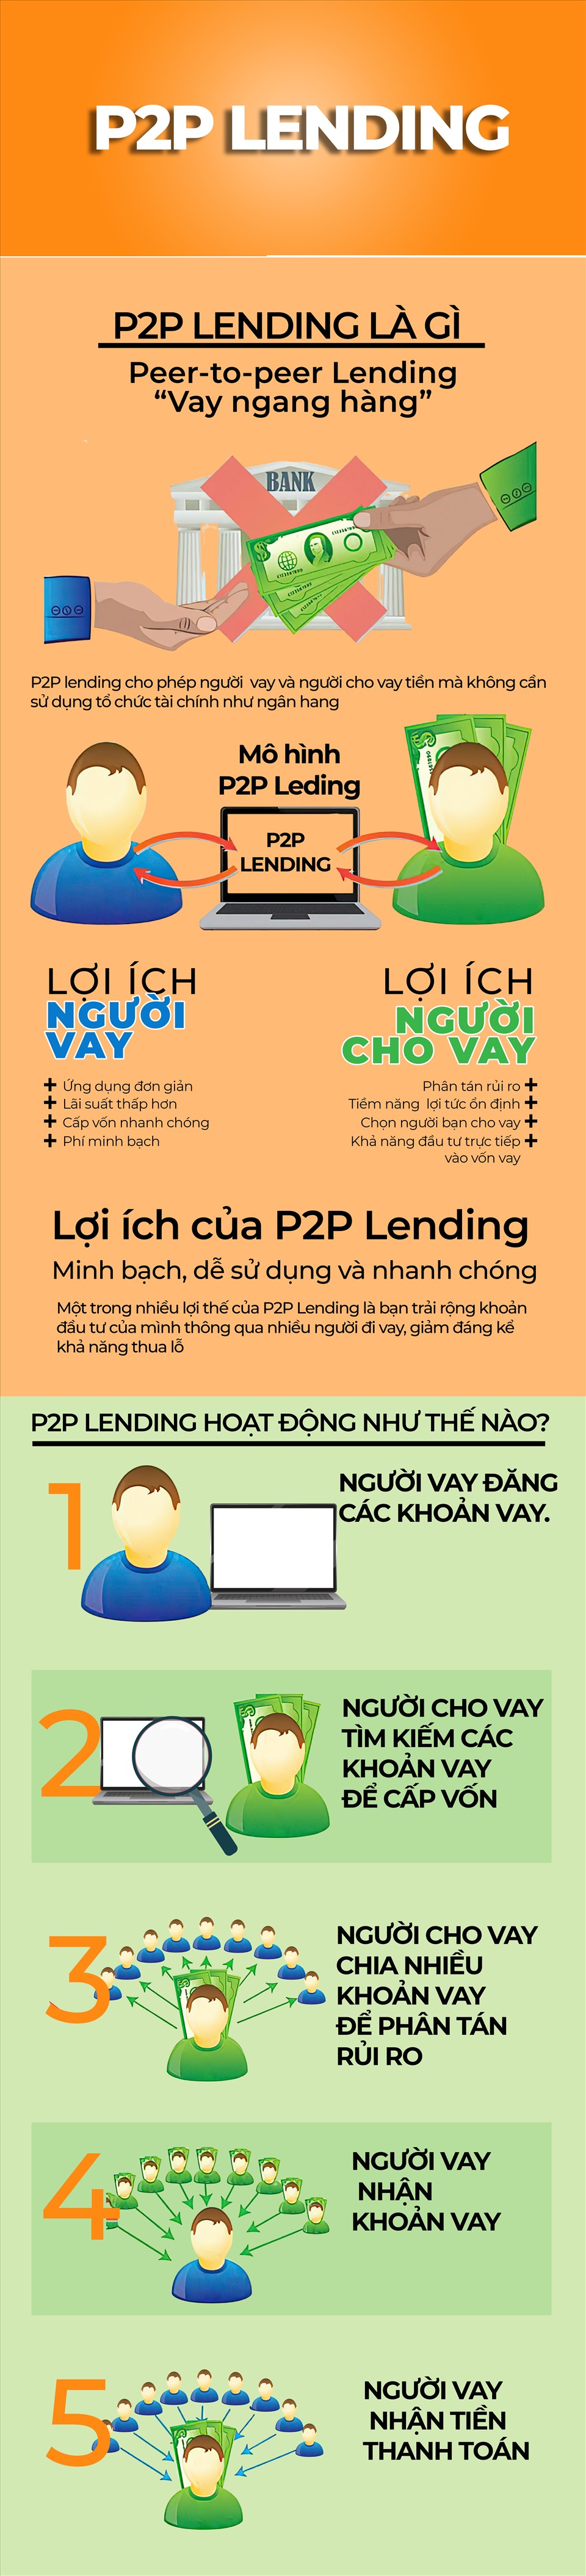 Mô hình hoạt động của P2P lending